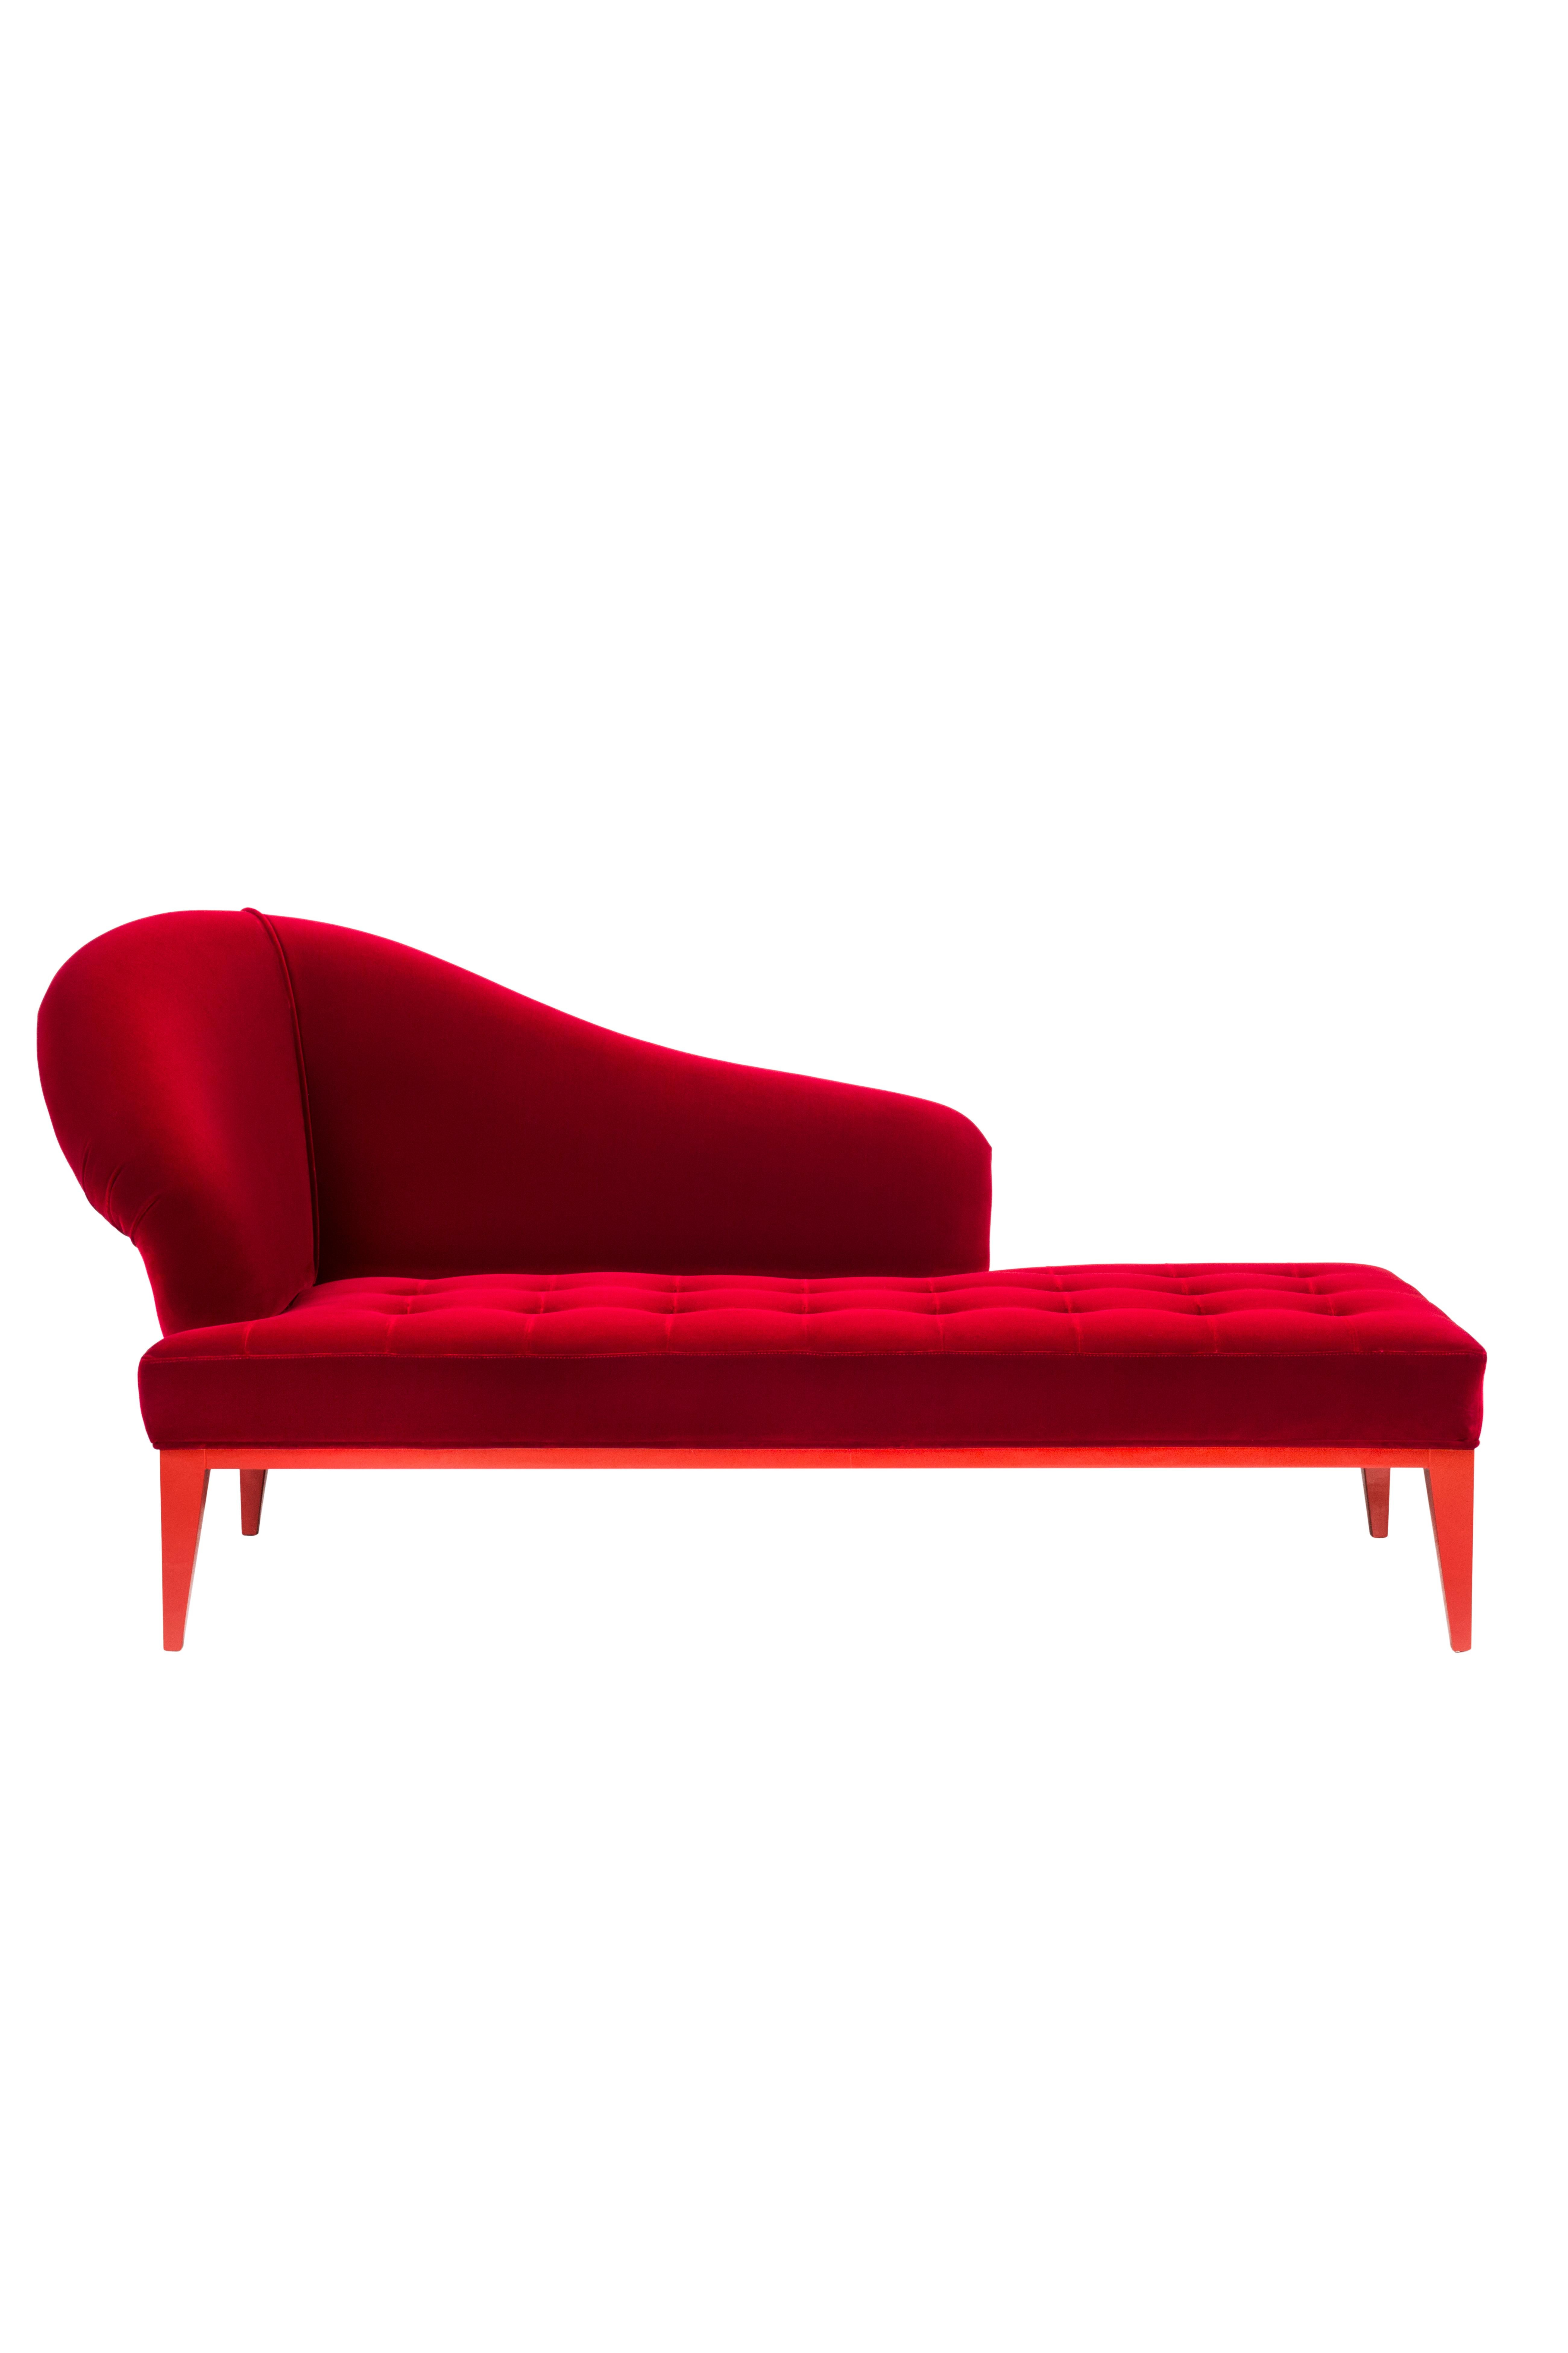 Art Deco Sumy Chaise Longue DEDAR Red Cotton Velvet Handmade Portugal Greenapple For Sale 1